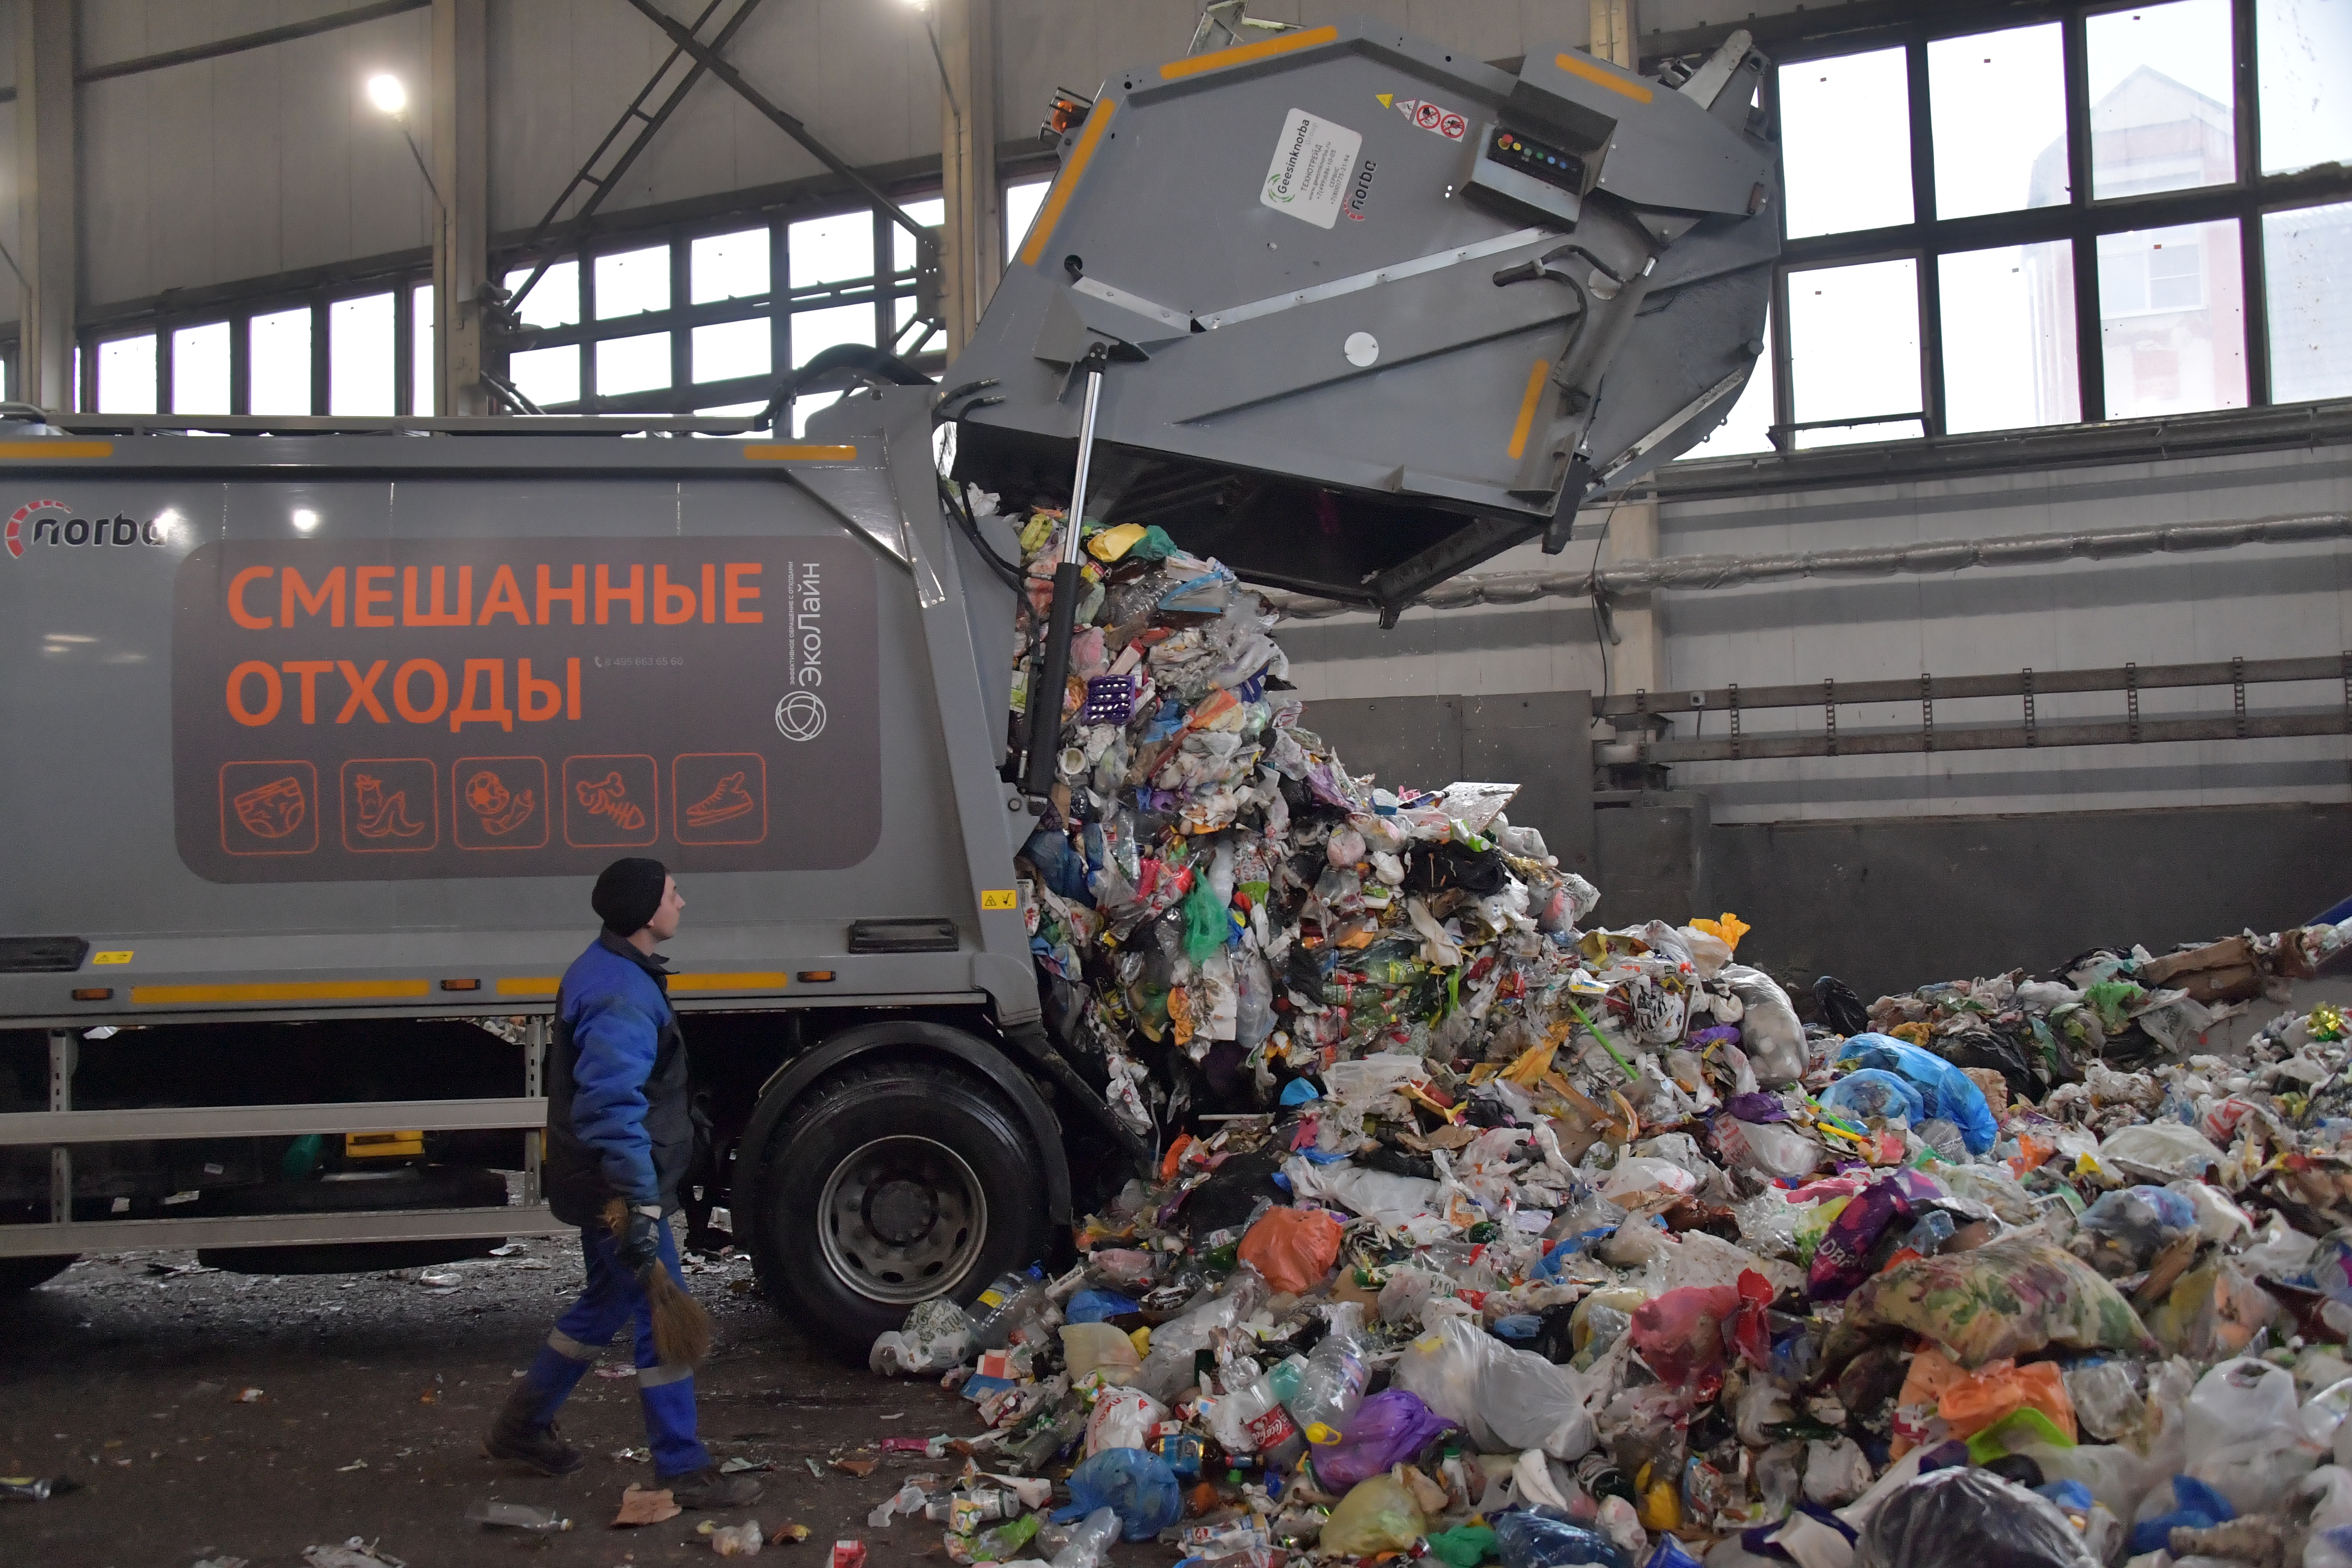 Правительство вместе с общественностью проконтролирует процесс утилизации ТКО Фото: © Global Look Press / Komsomolskaya Pravda